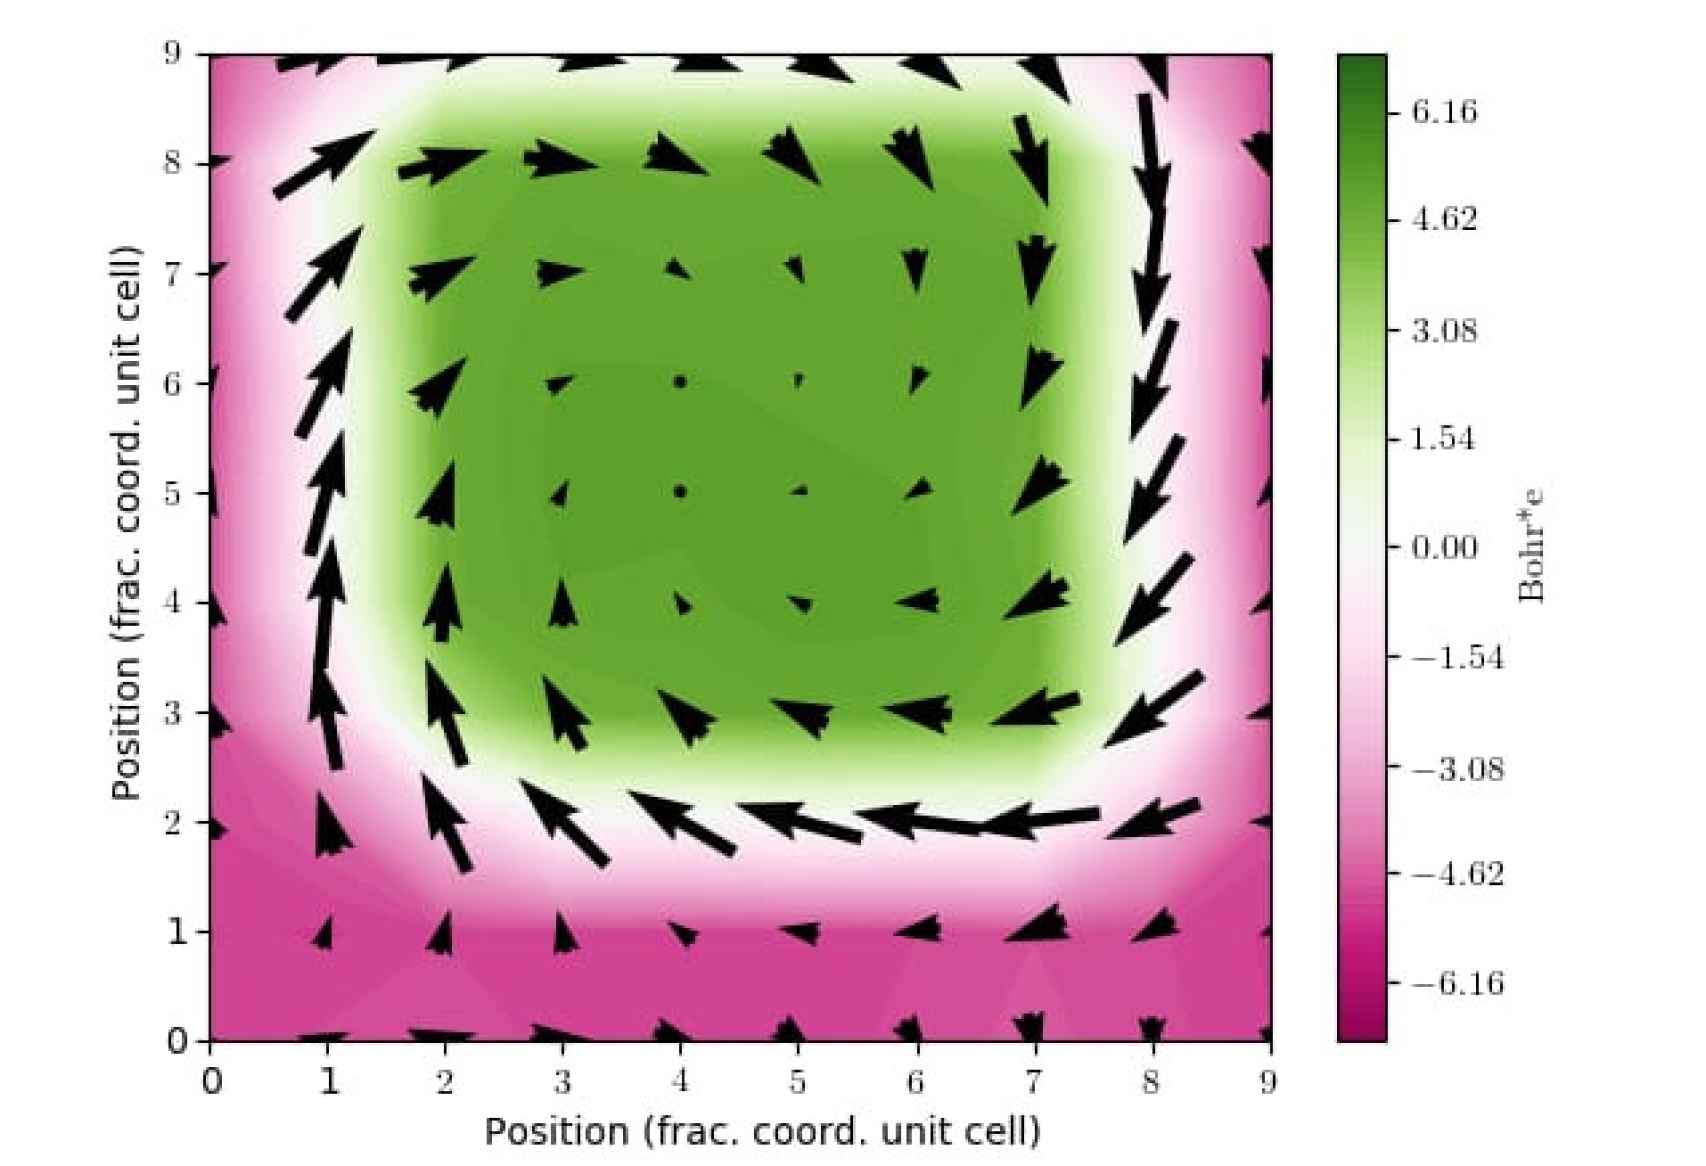 El hecho de juntar materiales ferroeléctricos en escalas nanometricas hace que interaccionen entre si y formen patrones complejos. En lugar de disponerse las flechas de polarización de manera homogénea, crean vórtices y remolinos parecidos a los ojos de huracanes, como se percibe en la gráfica.